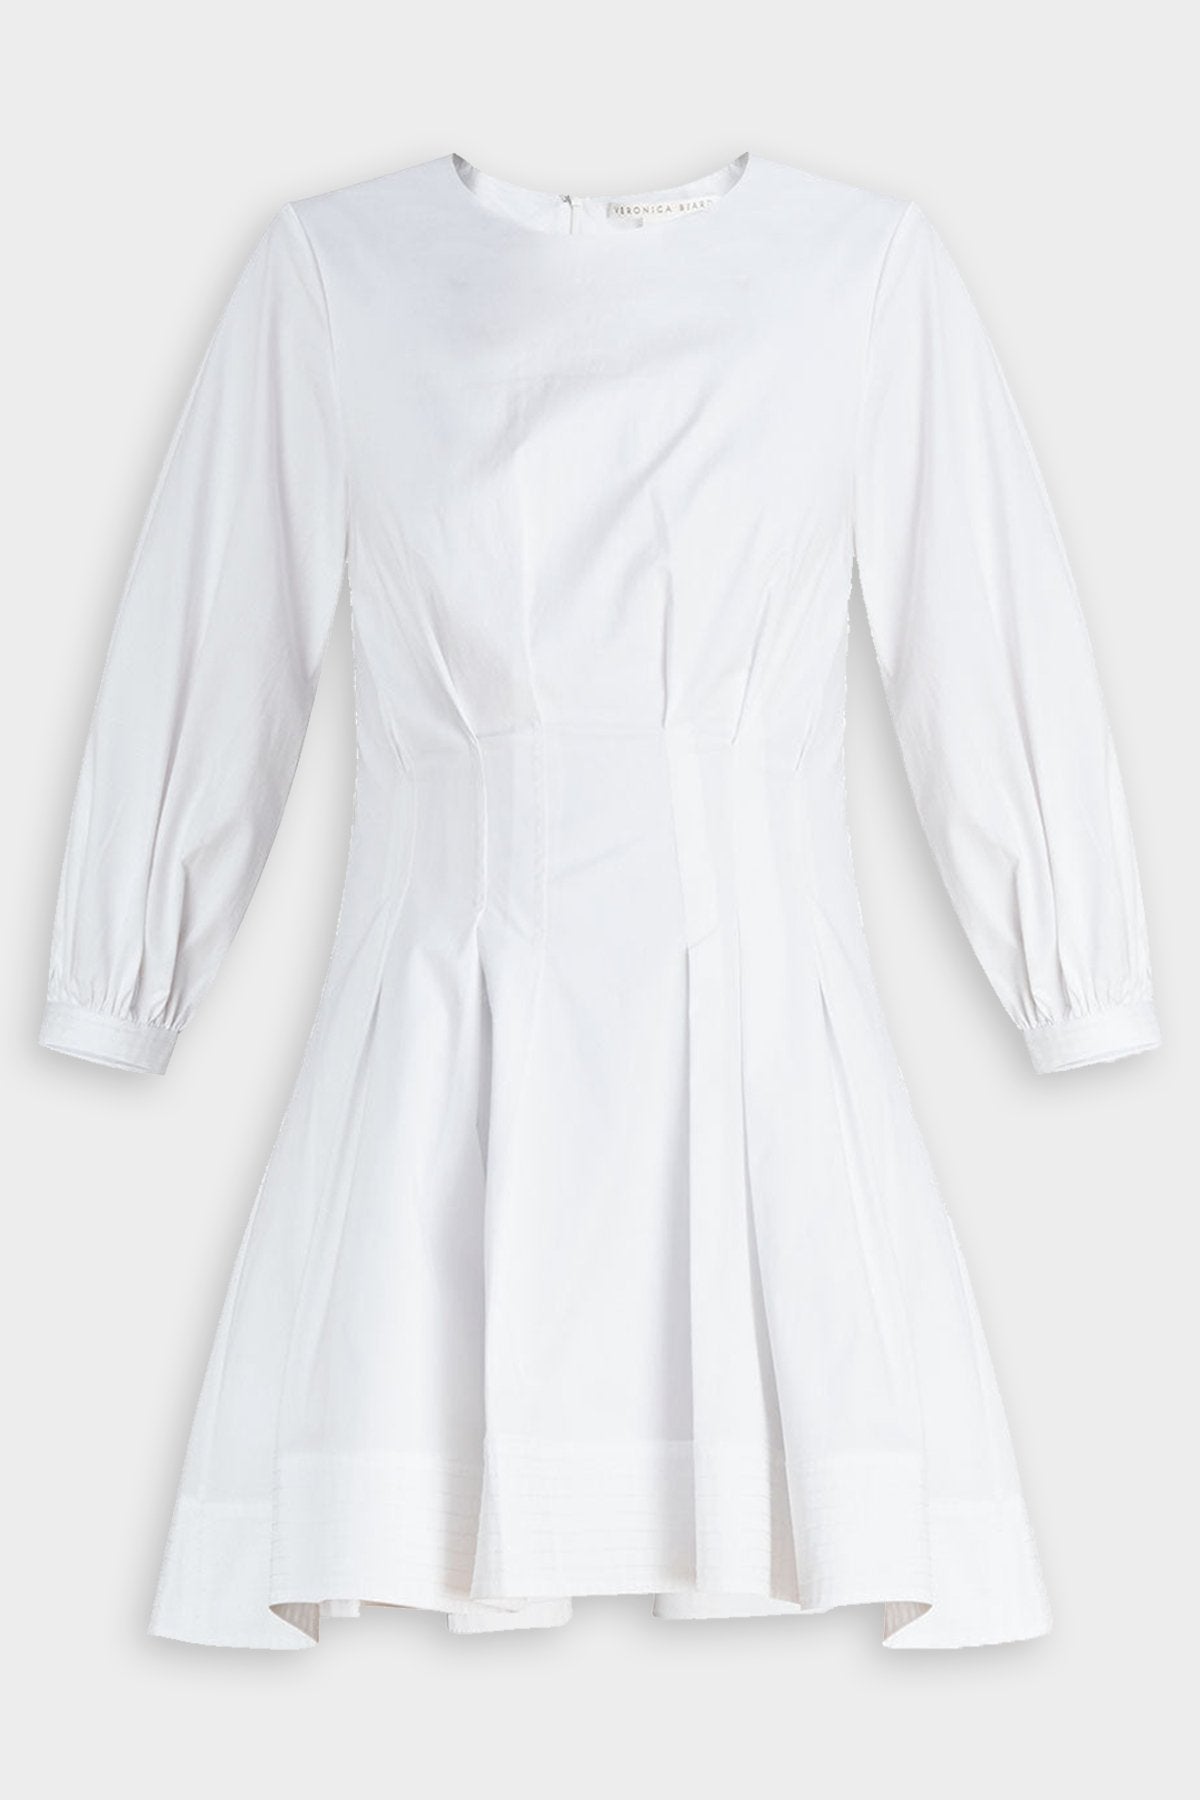 Torres Dress in White - shop-olivia.com